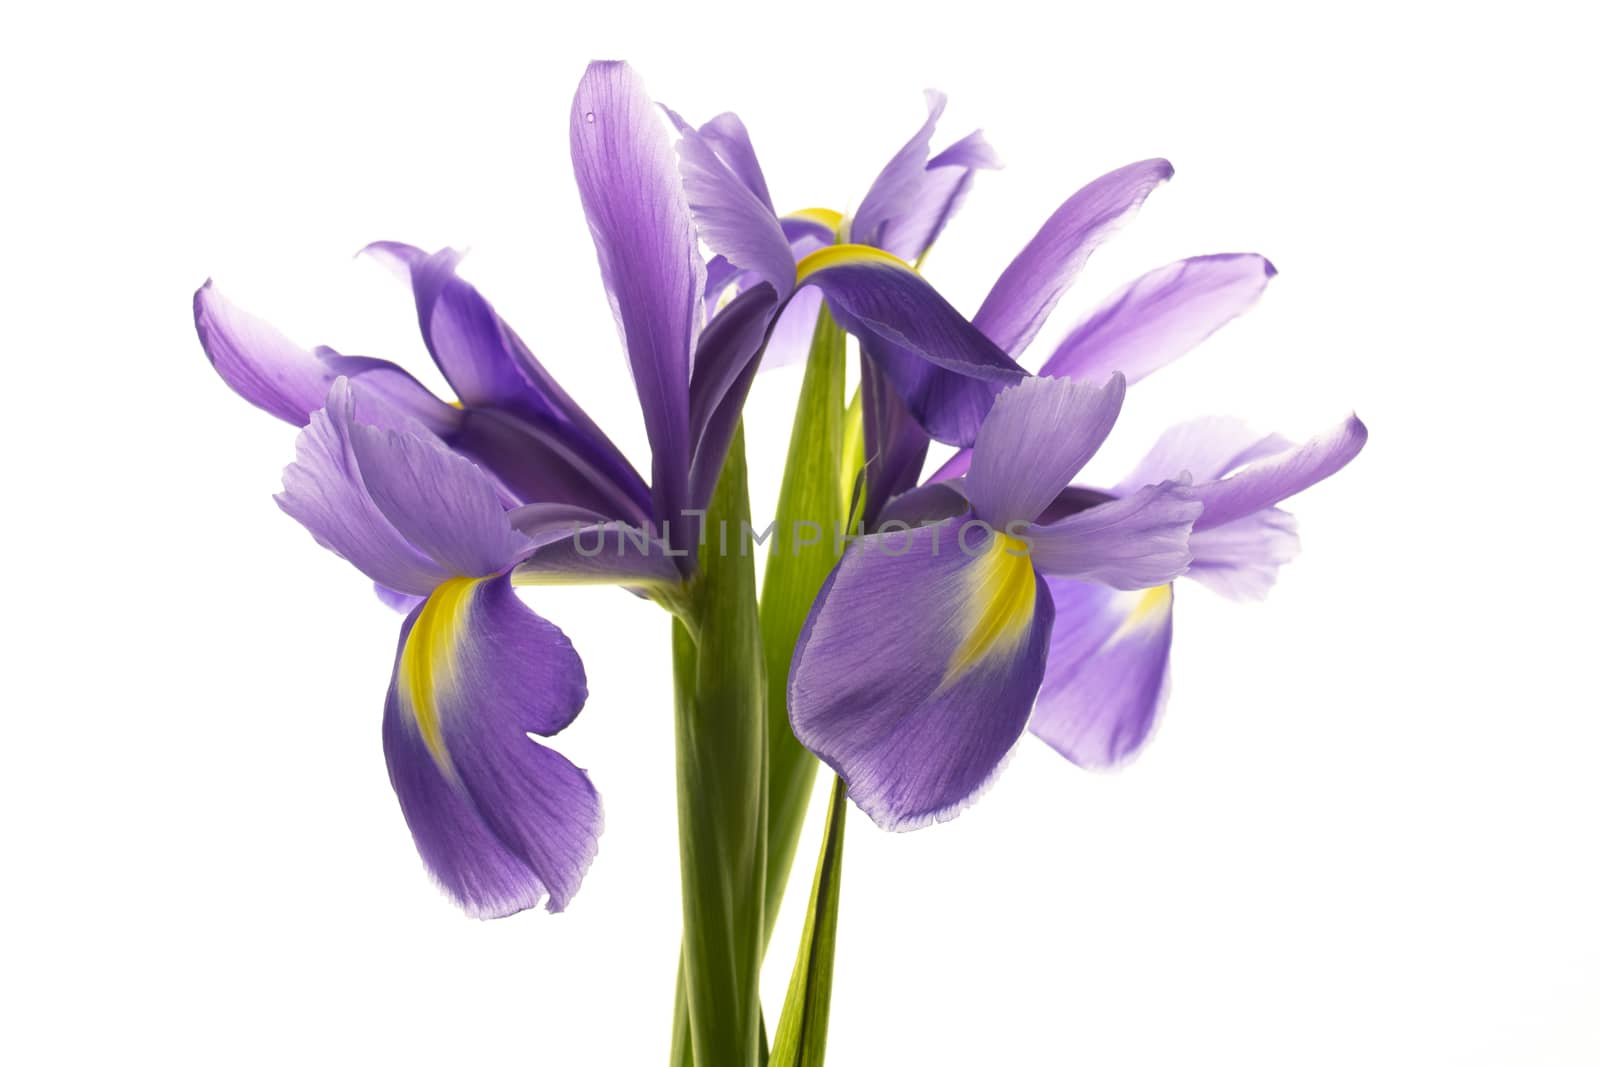 Blue irises isolated on a white background by sashokddt